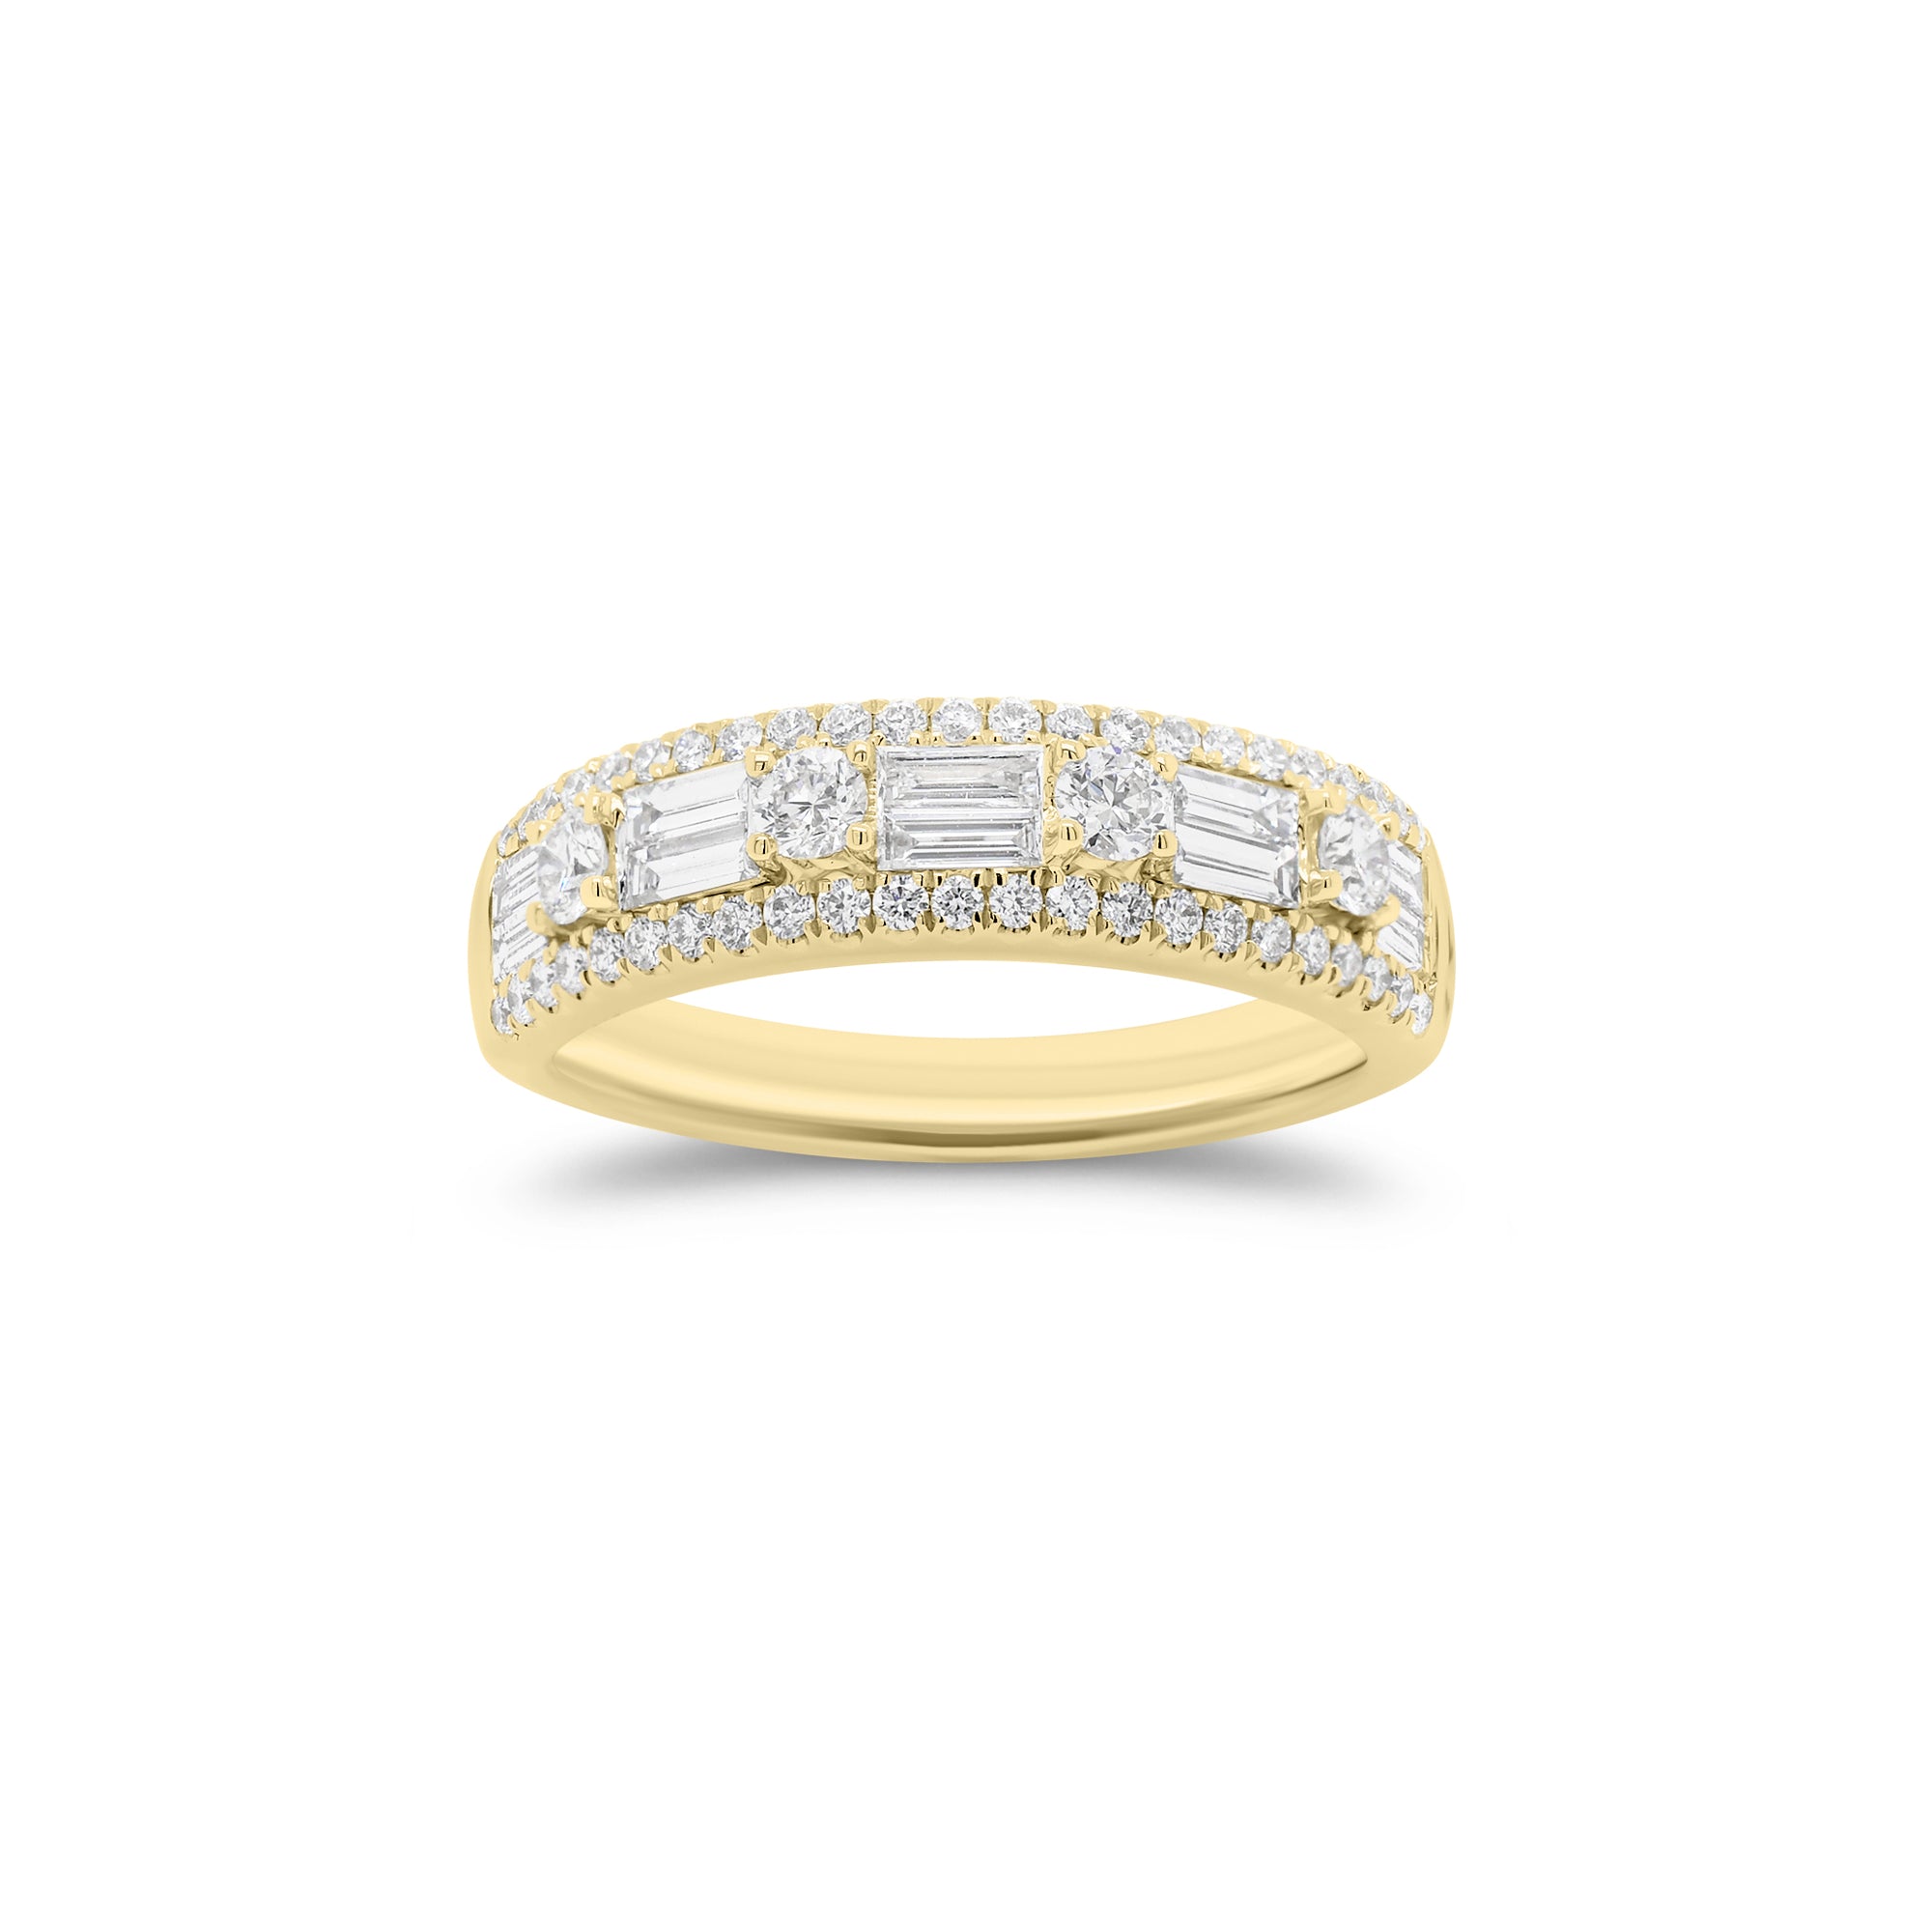 Round & baguette diamond pattern ring - 18K gold weighing 4.45 grams  - 50 round diamonds weighing 0.45 carats  - 10 straight baguettes weighing 0.43 carats